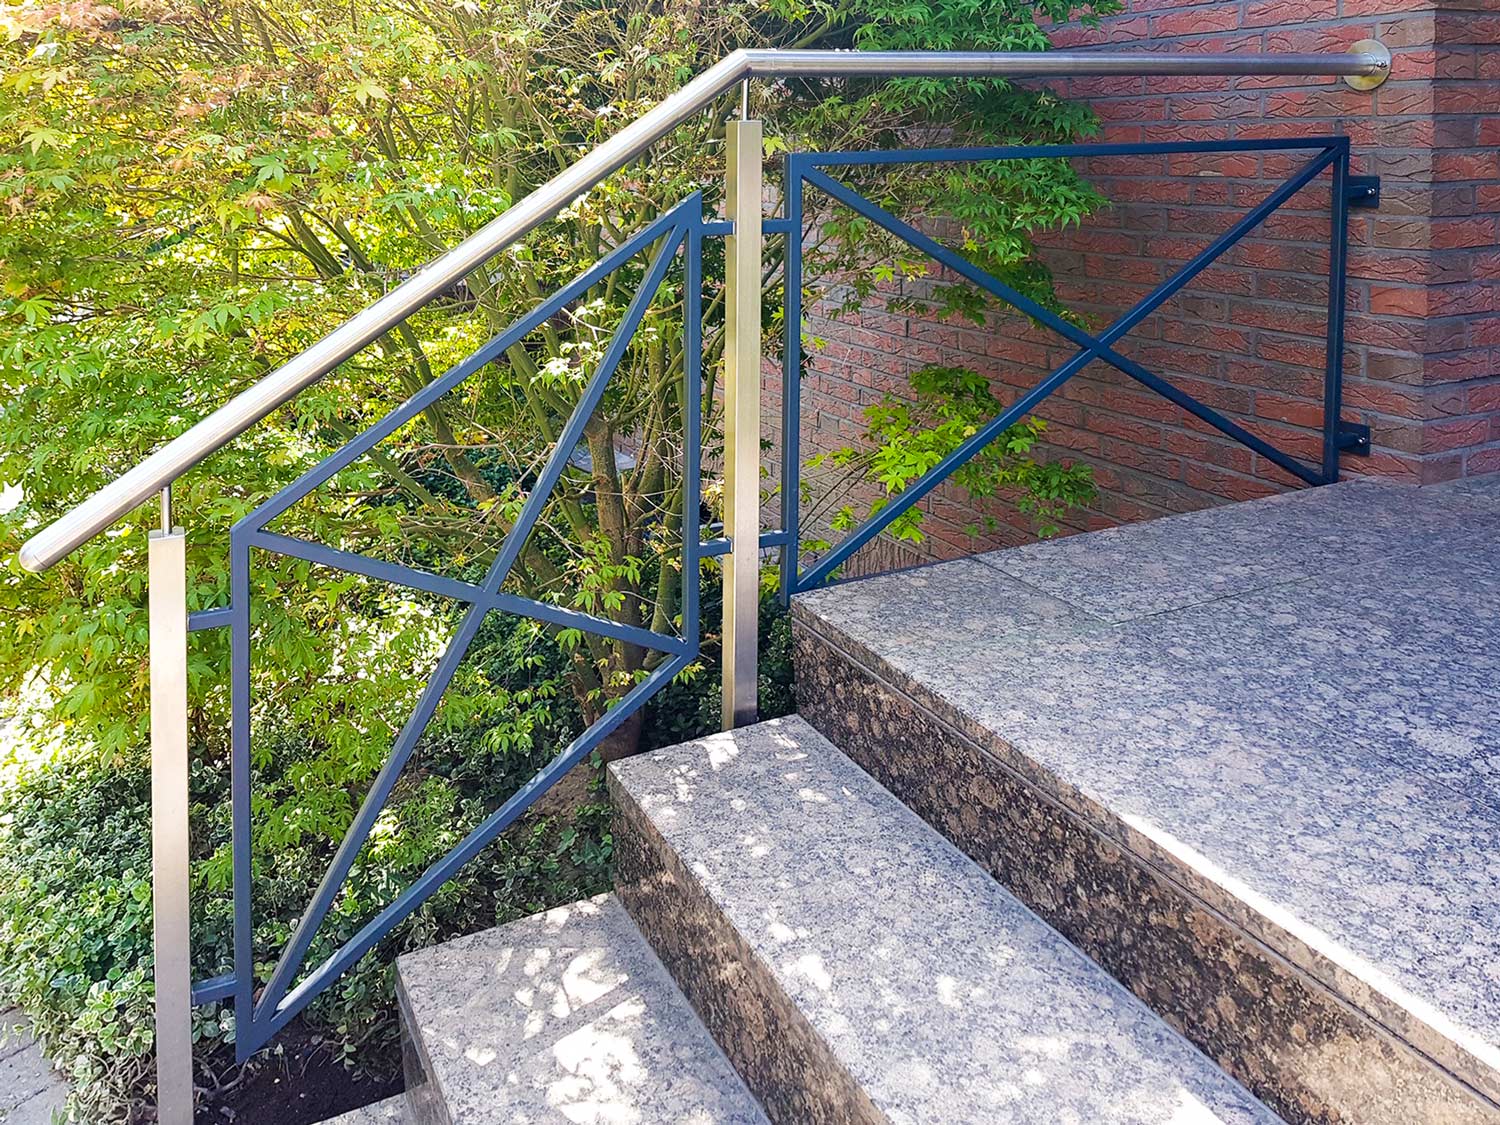 Treppengeländer aus Edelstahl in Duisburg, geplant und umgesetzt von der Edelstahlschlosserei Nappenfeld aus Mülheim